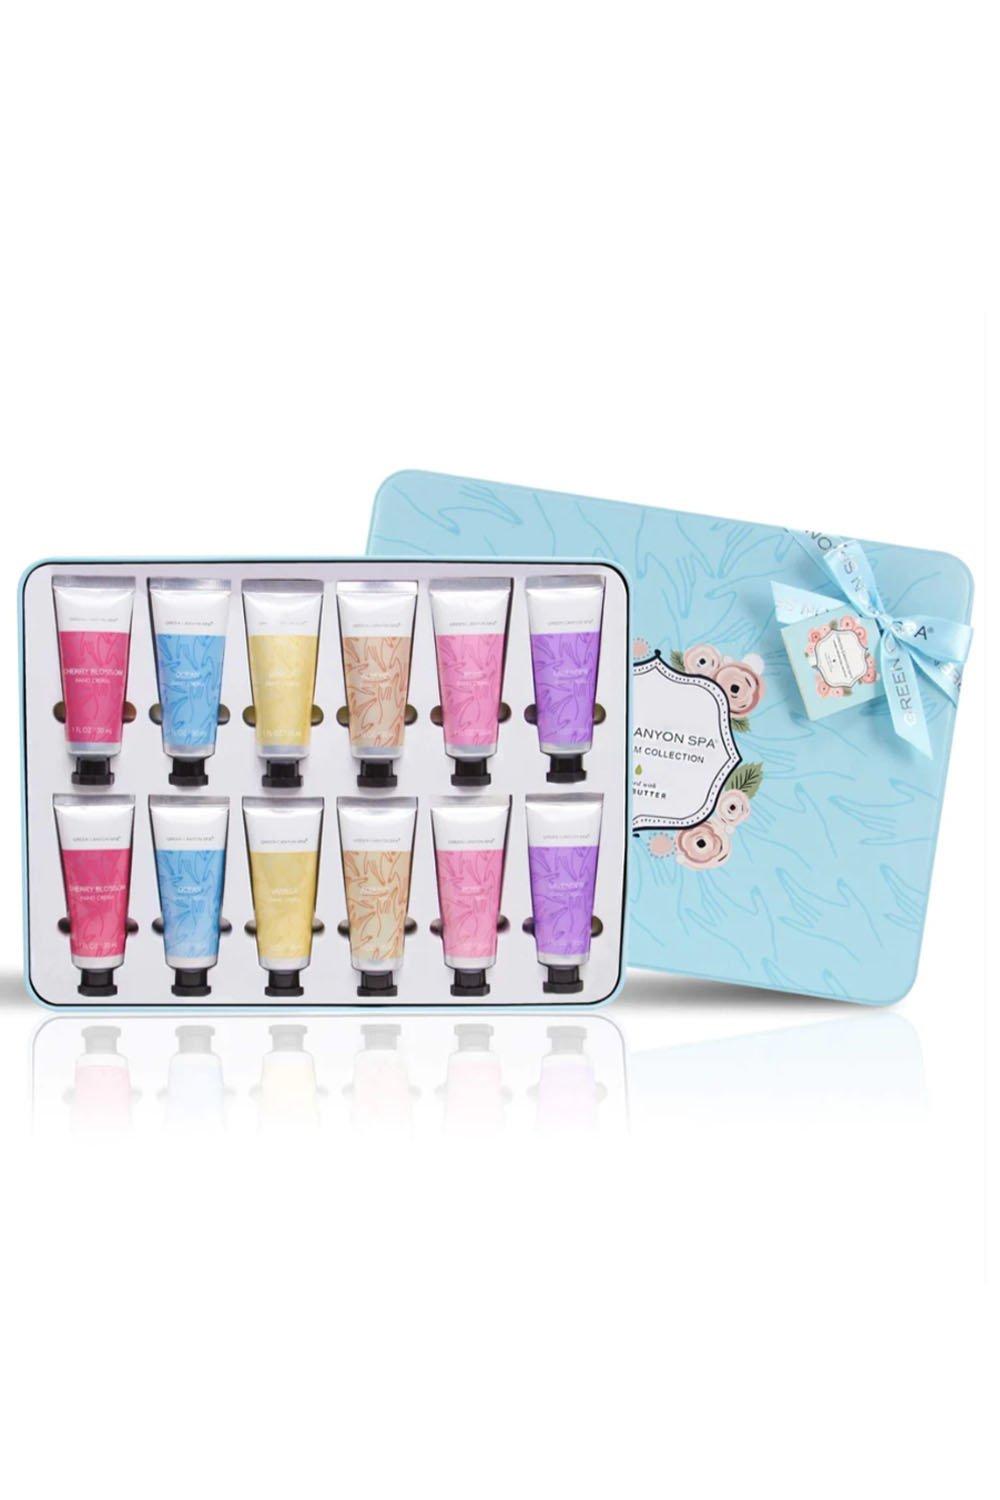 12 Pcs Shea Butter Hand Cream Gift Set